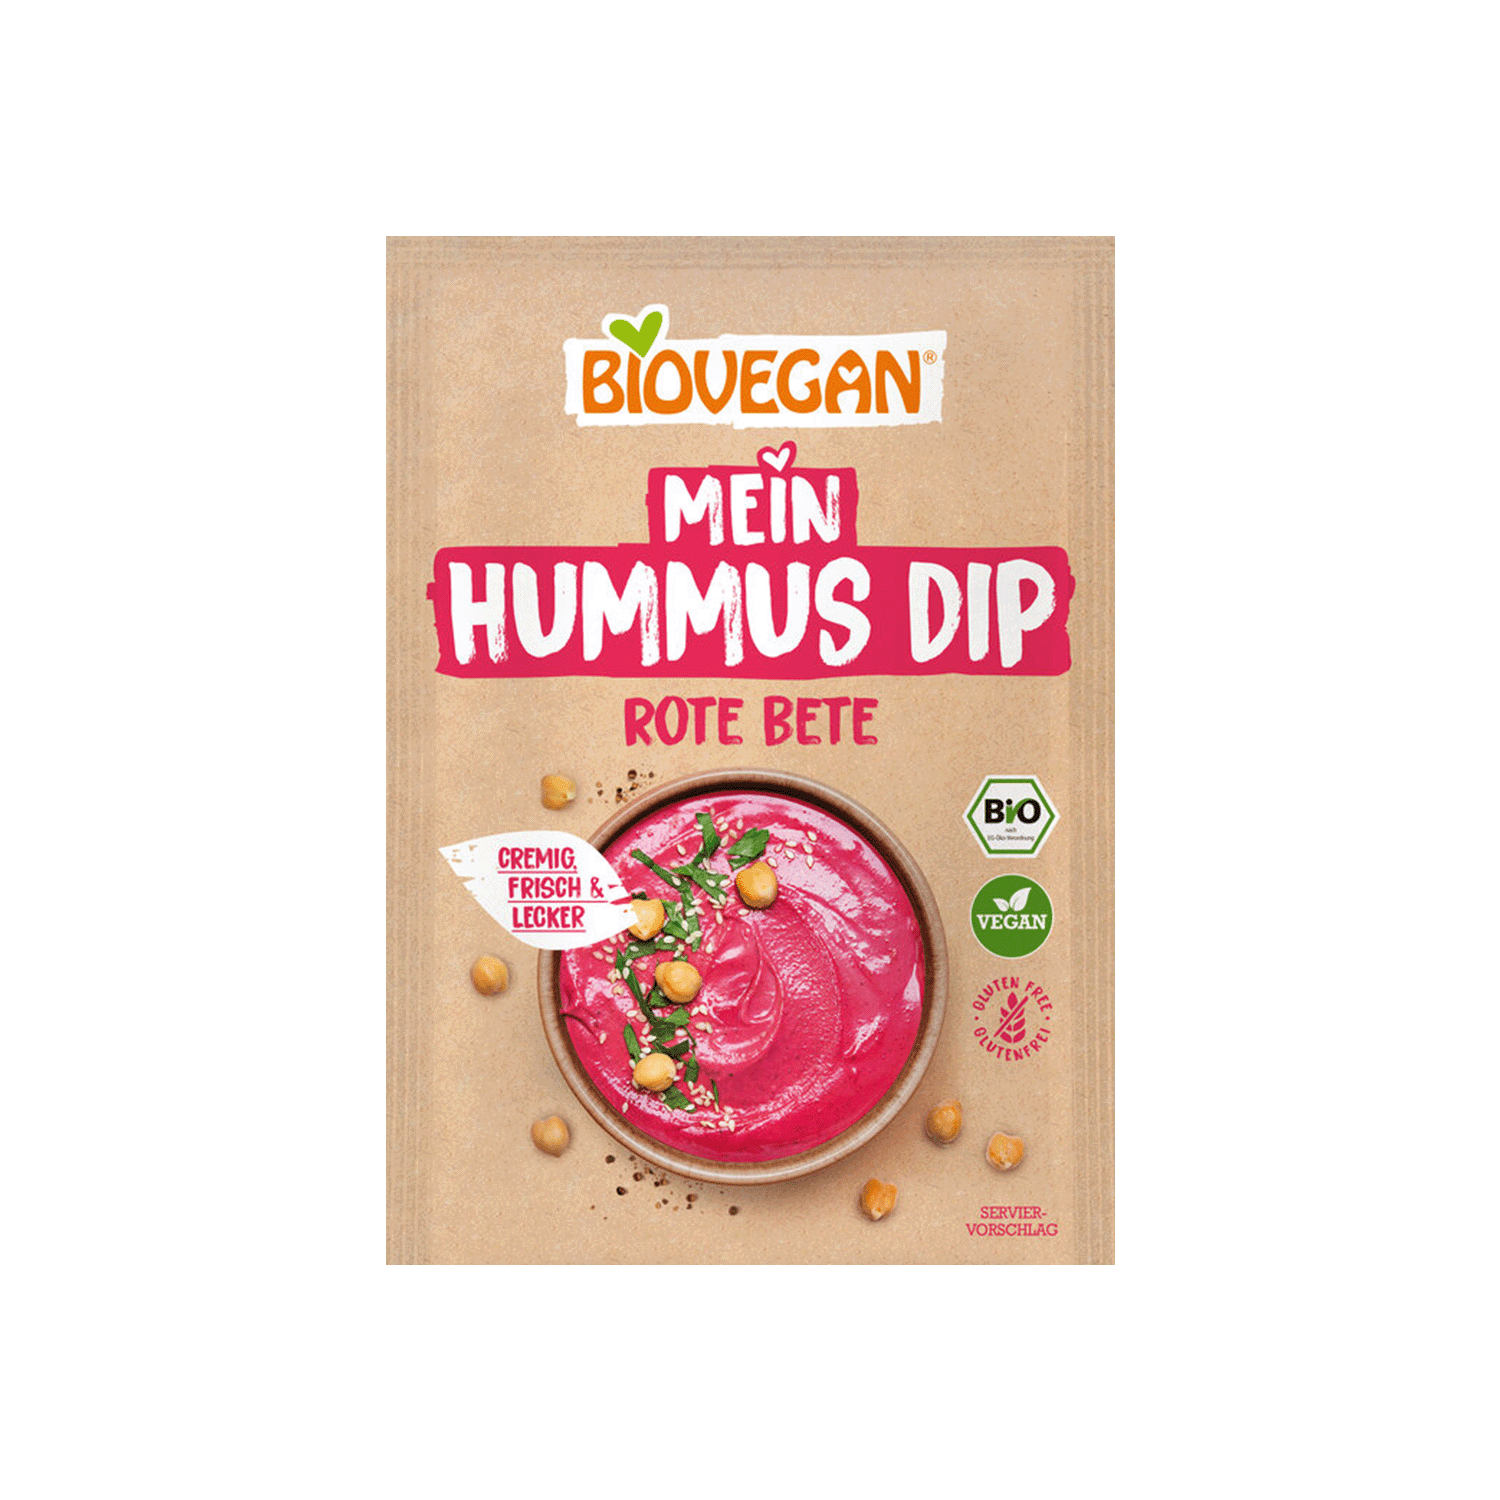 Mein Hummus Dip, Rote Bete, BIO, 55g